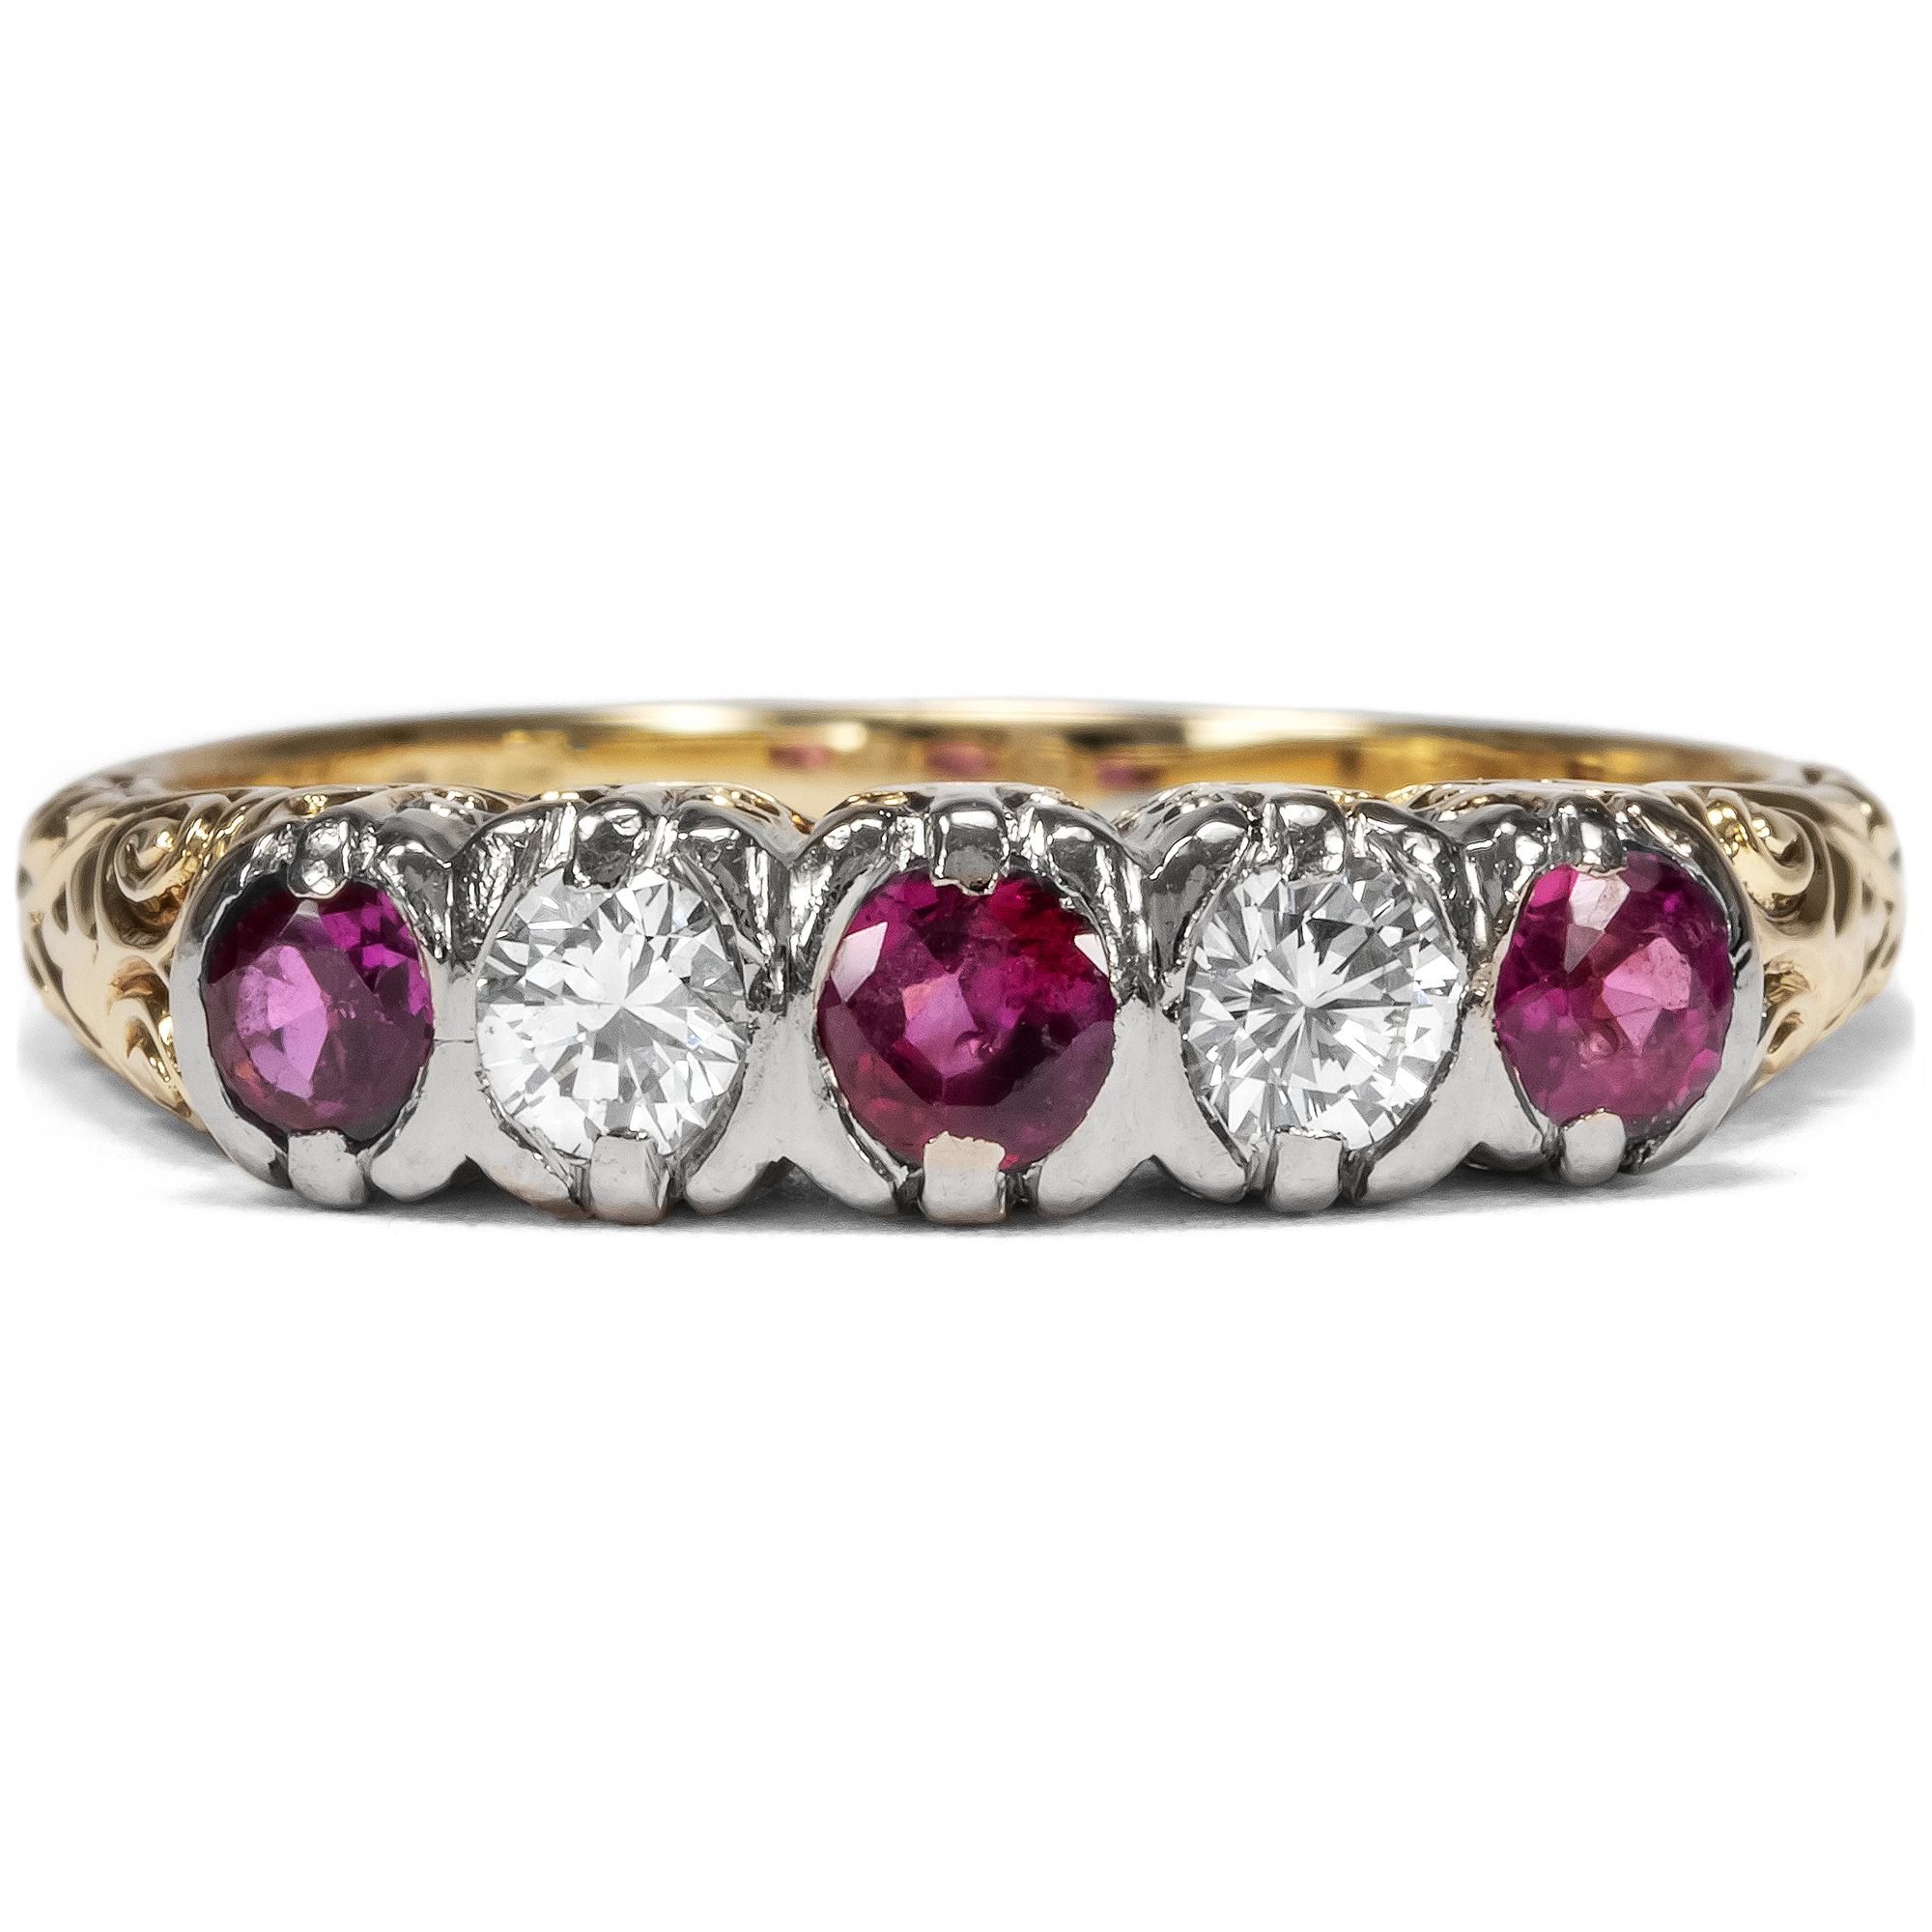 Vintage Ring mit Rubinen aus Burma & Diamanten in Gold, um 1980